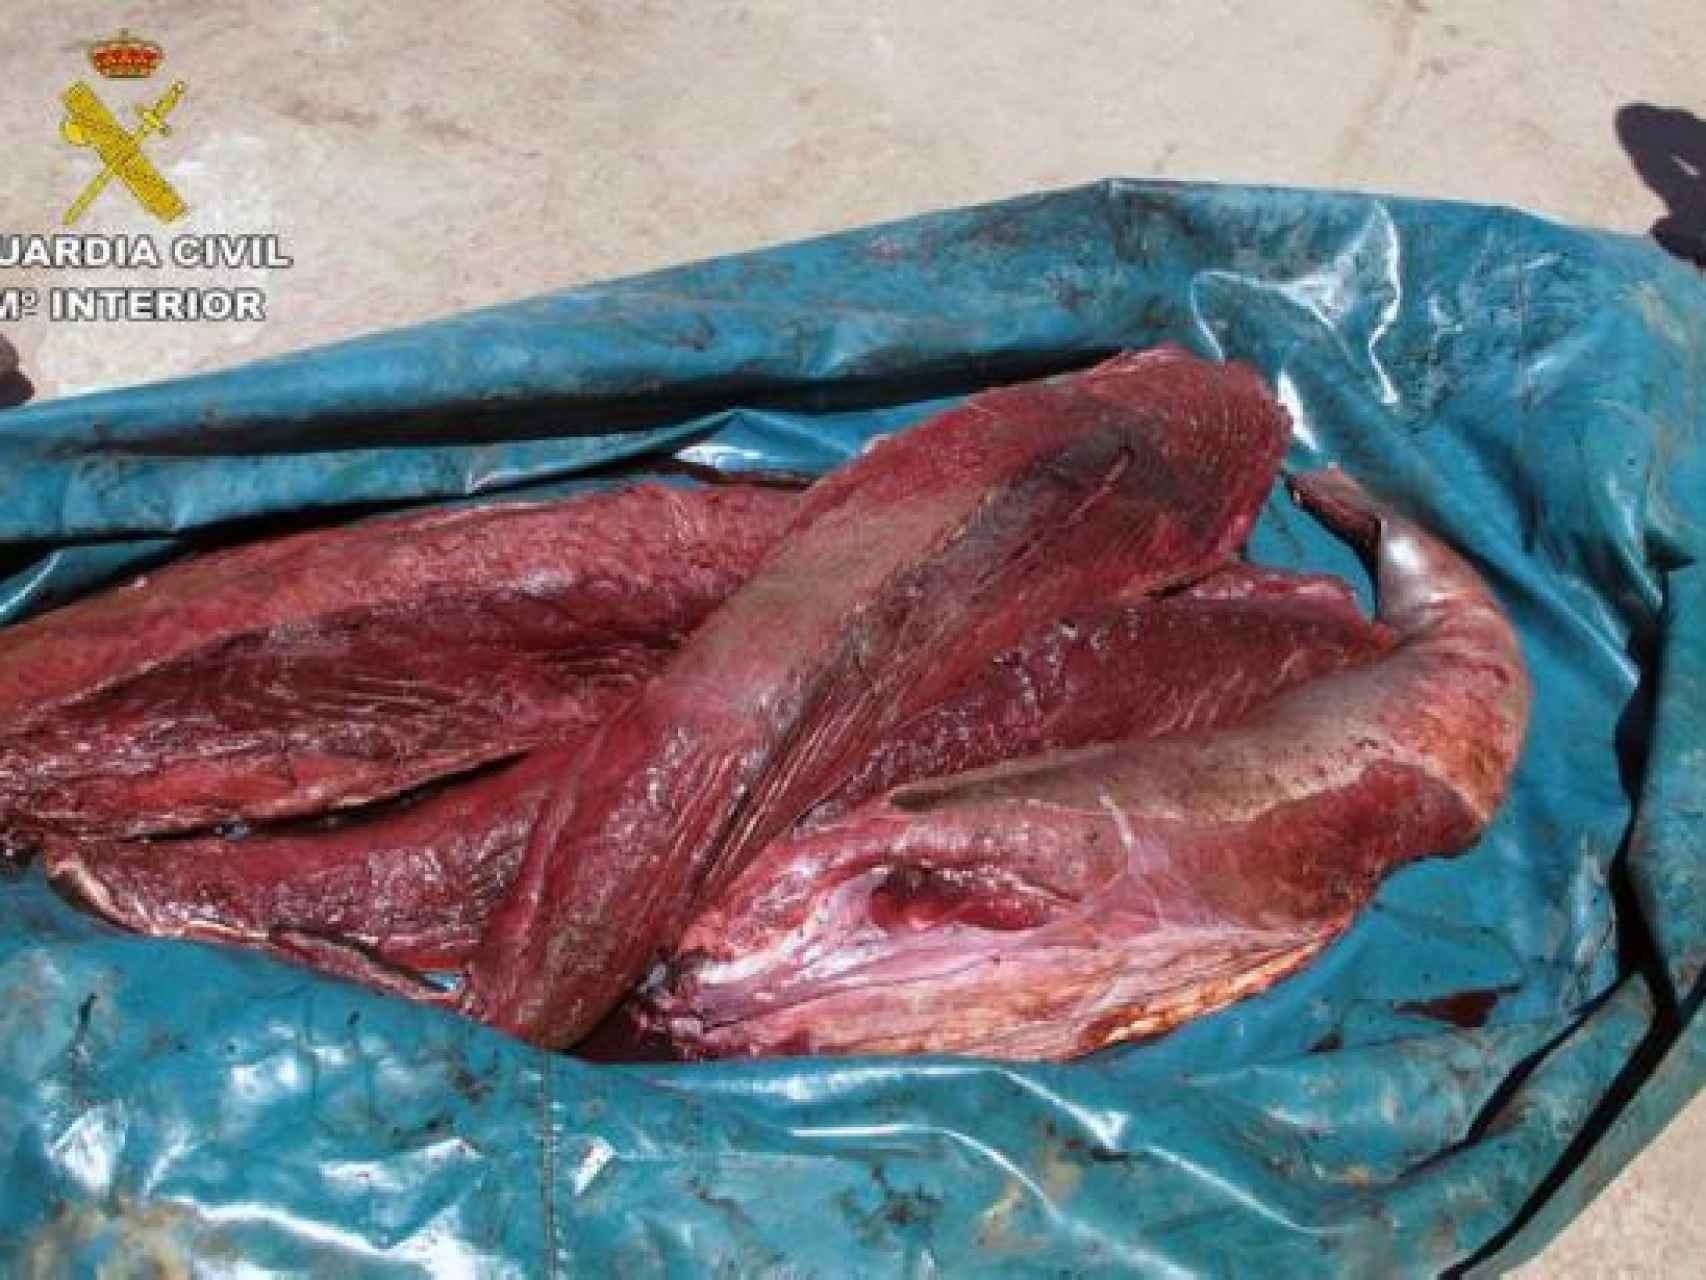 Carne de atún rojo capturado ilegalmente aprehendida por la Guardia Civil.